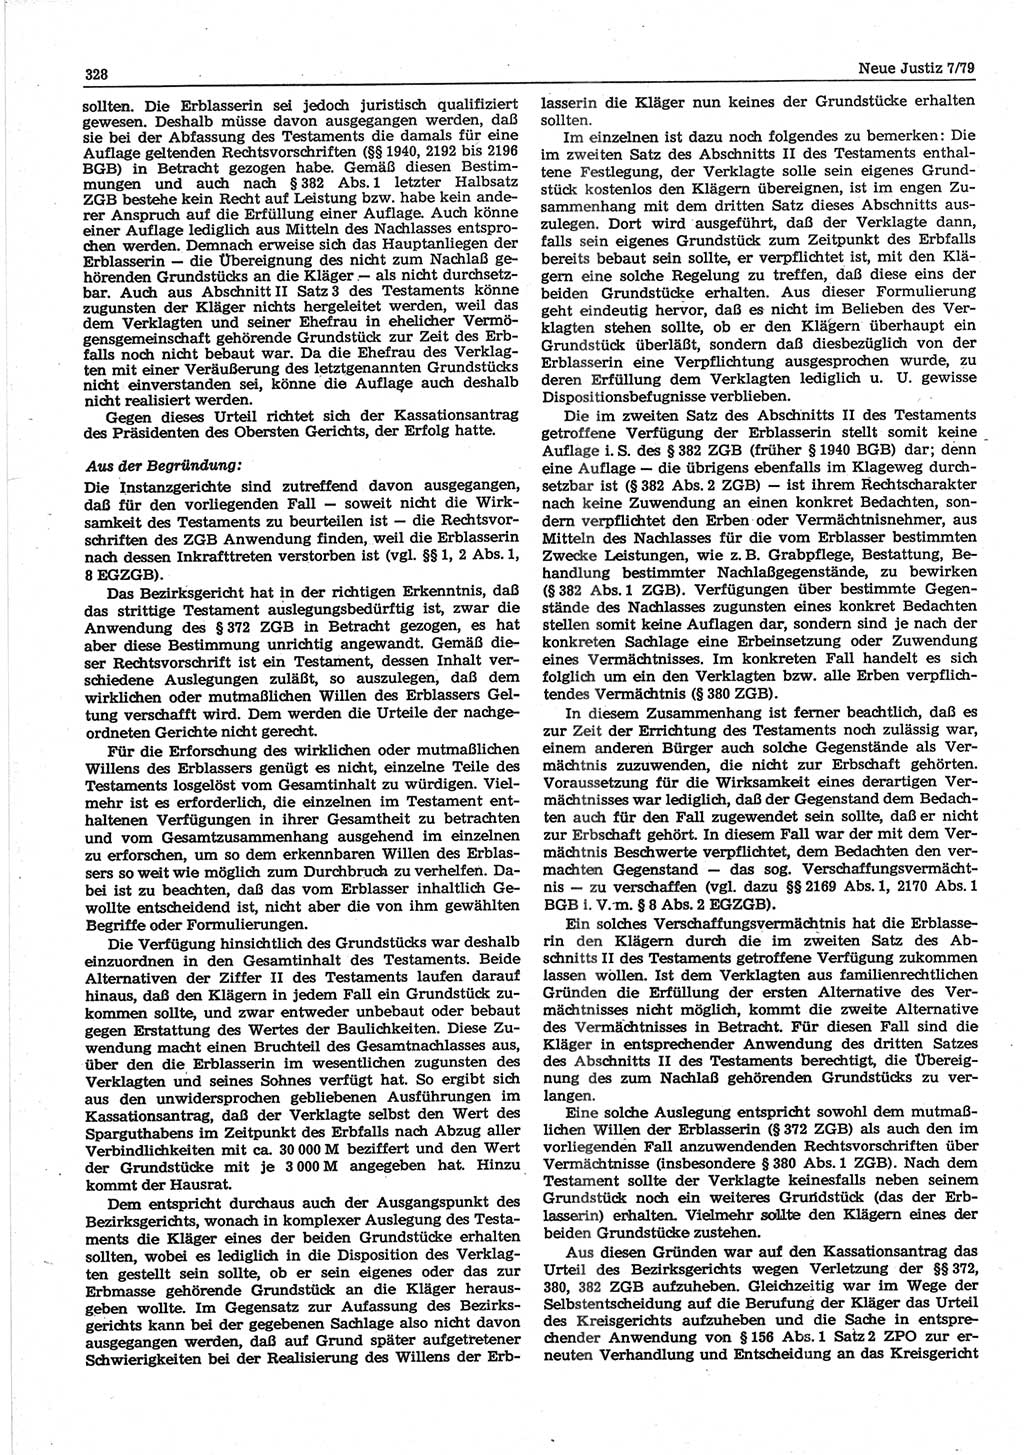 Neue Justiz (NJ), Zeitschrift für sozialistisches Recht und Gesetzlichkeit [Deutsche Demokratische Republik (DDR)], 33. Jahrgang 1979, Seite 328 (NJ DDR 1979, S. 328)